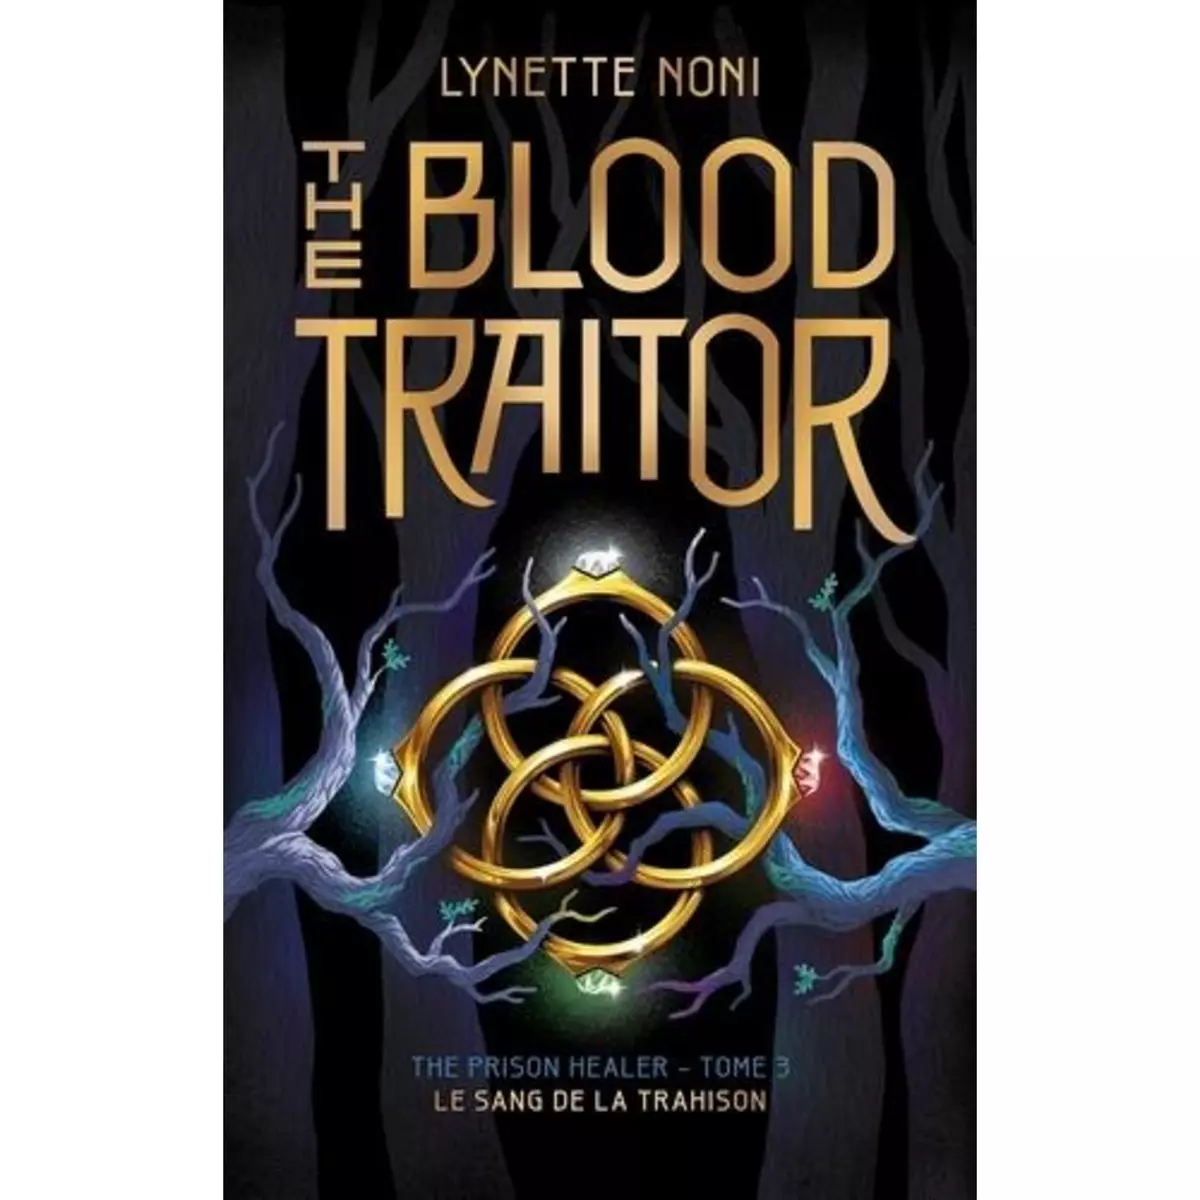  THE PRISON HEALER TOME 3 : THE BLOOD TRAITOR. LE SANG DE LA TRAHISON, Noni Lynette